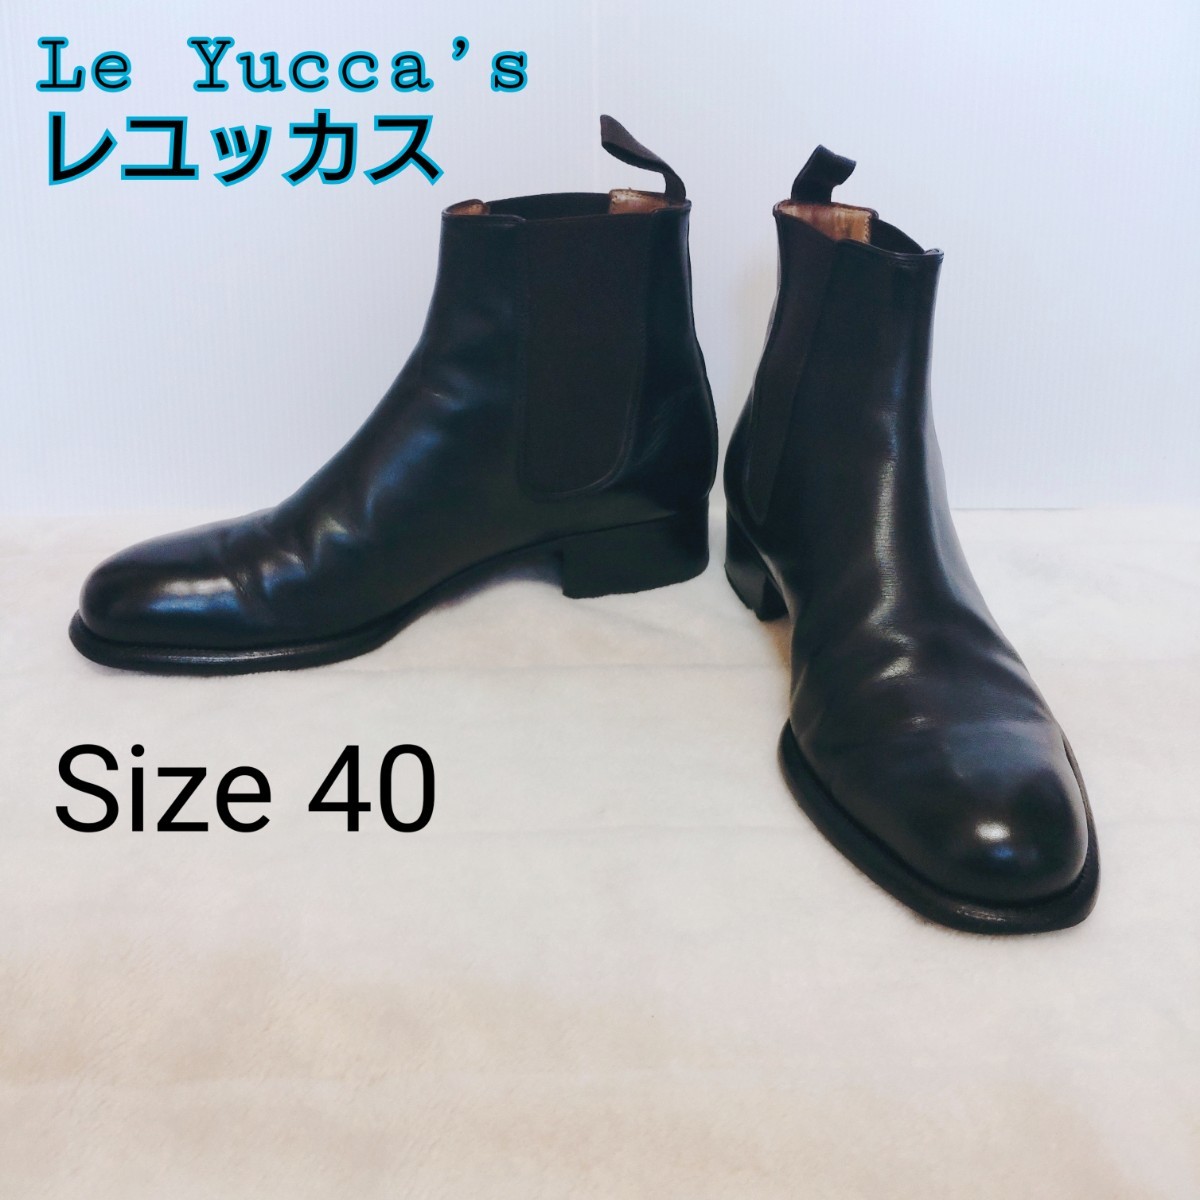 【高級感】レユッカス Le Yucca’s★サイドゴアブーツ★サイズ40/25.0cm相当★レザー 本革 ウッドソール ブラック ゴールド金具 イタリア製